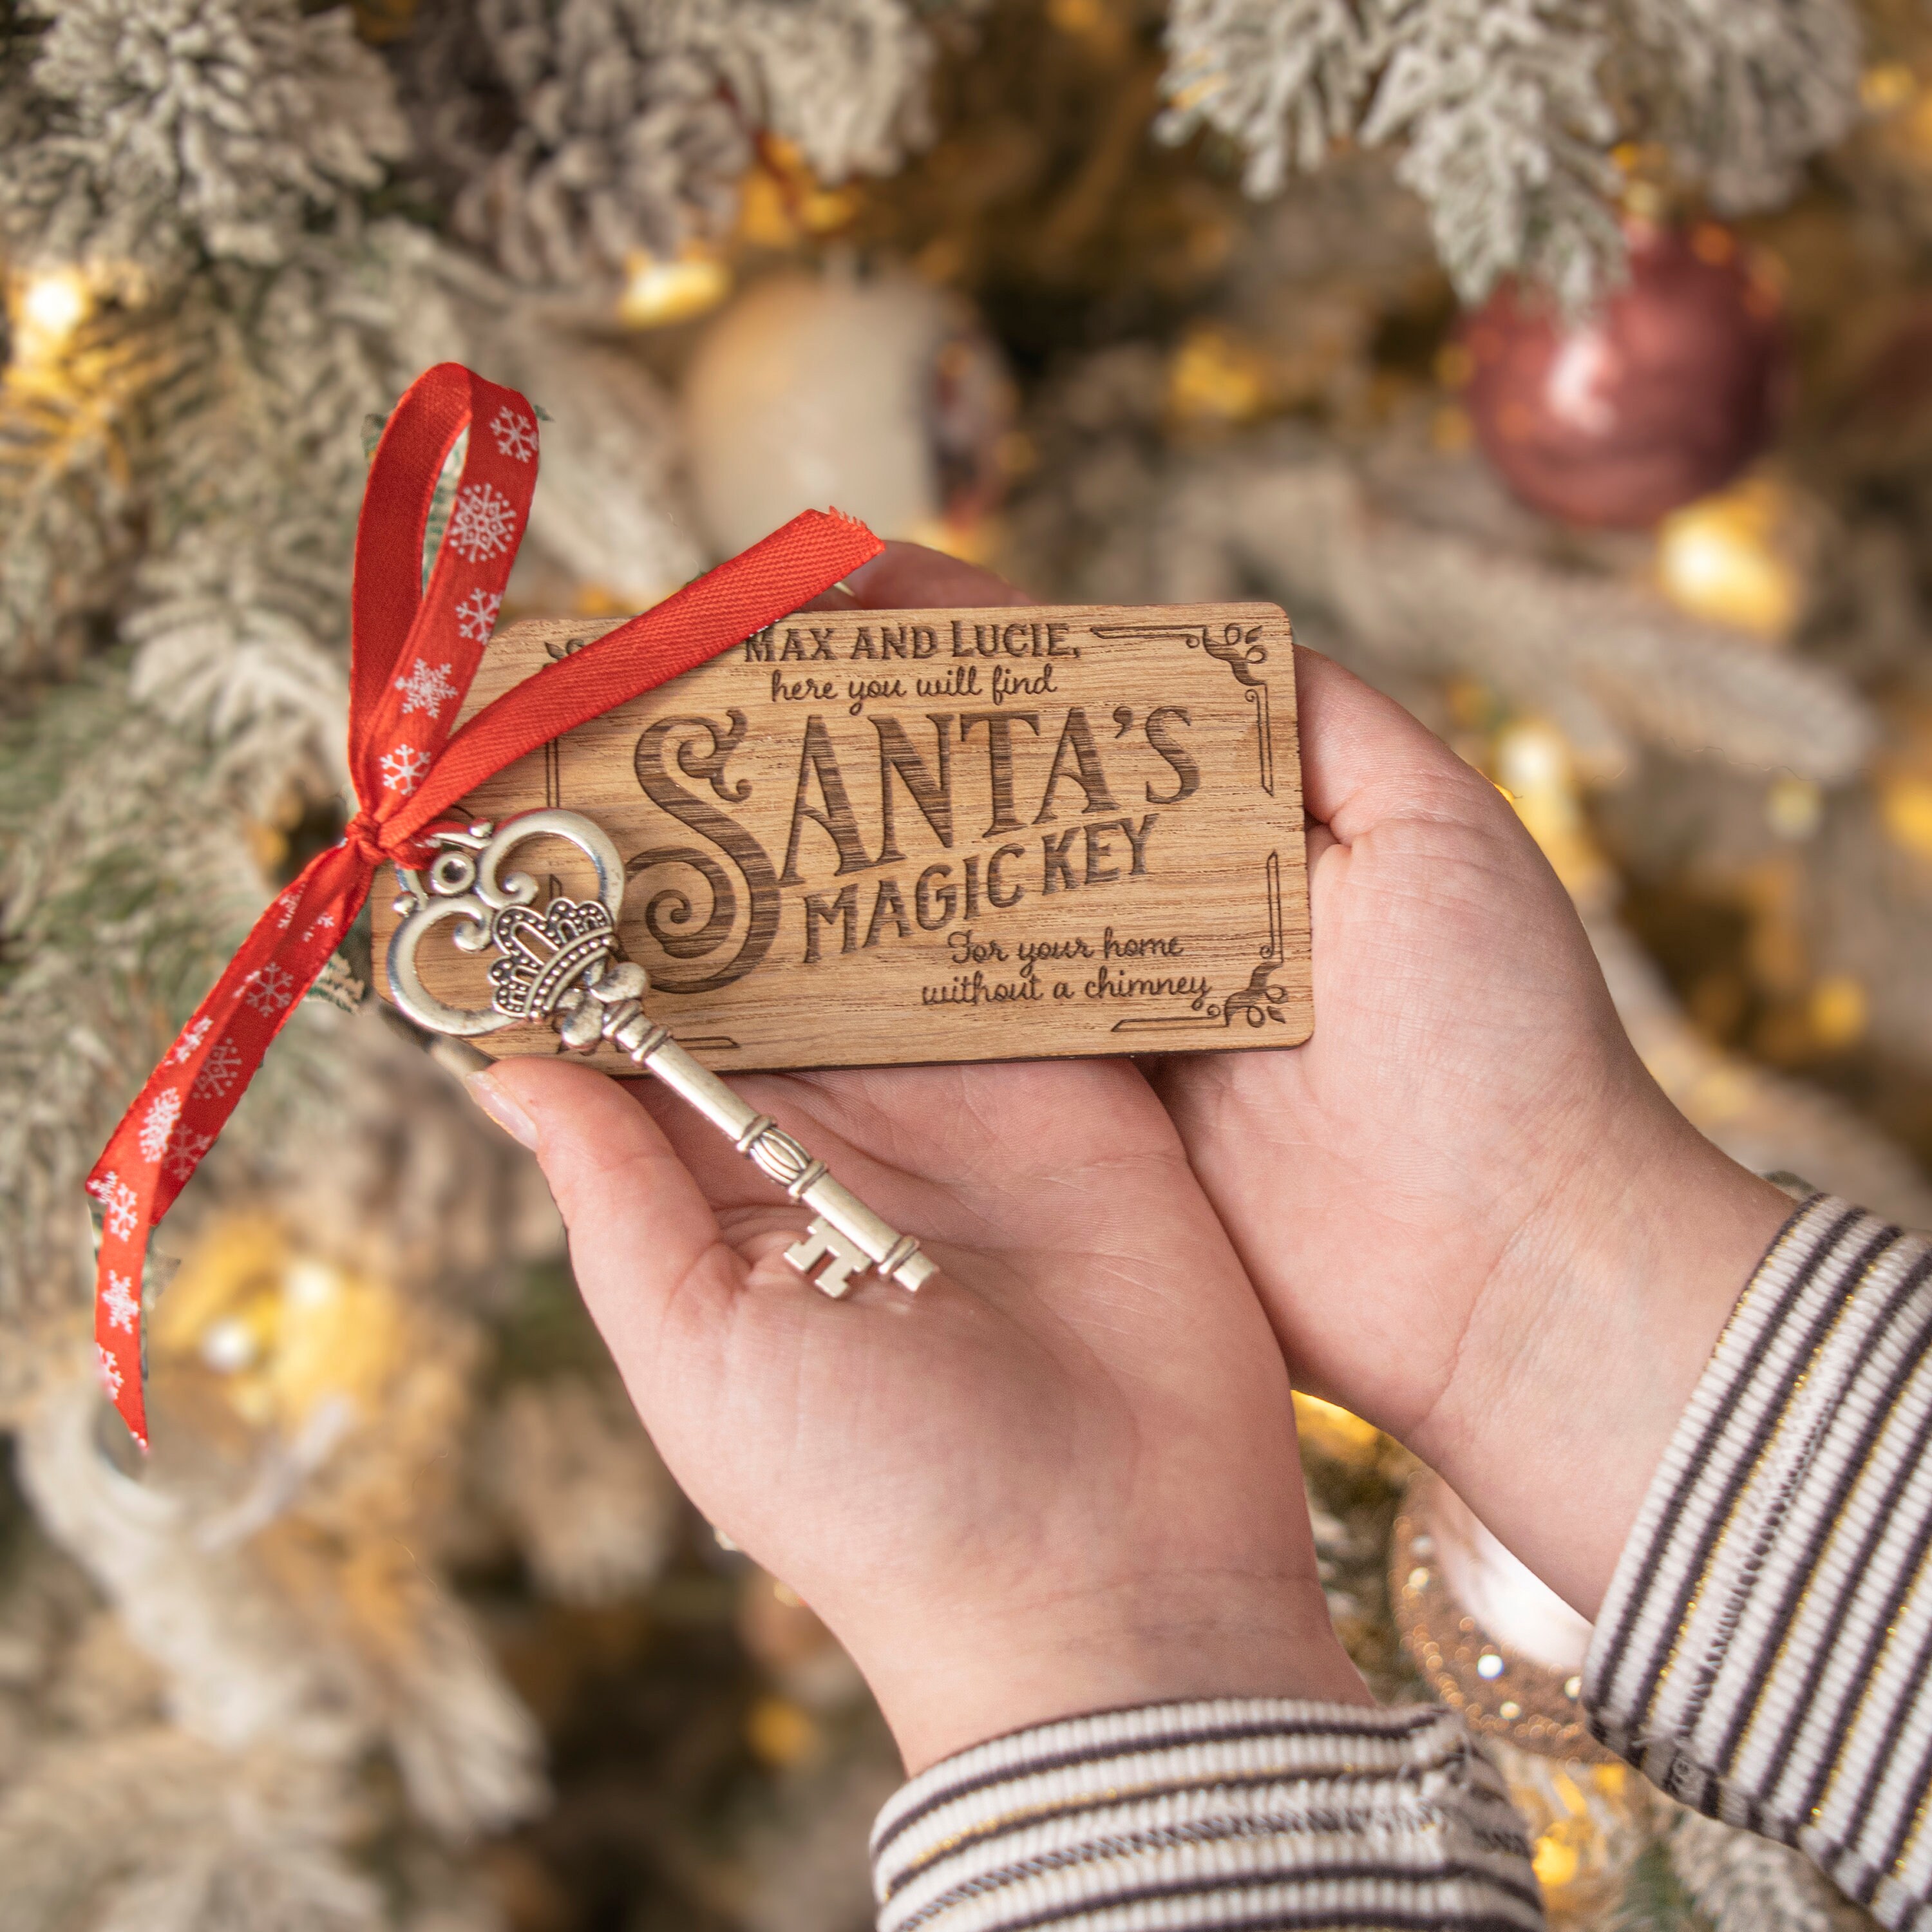 2 Sets Santa's Key Wooden Gift Tags and Mesh Bags, Christmas Santa Key  Magical Santa Claus Christmas Ornaments for House